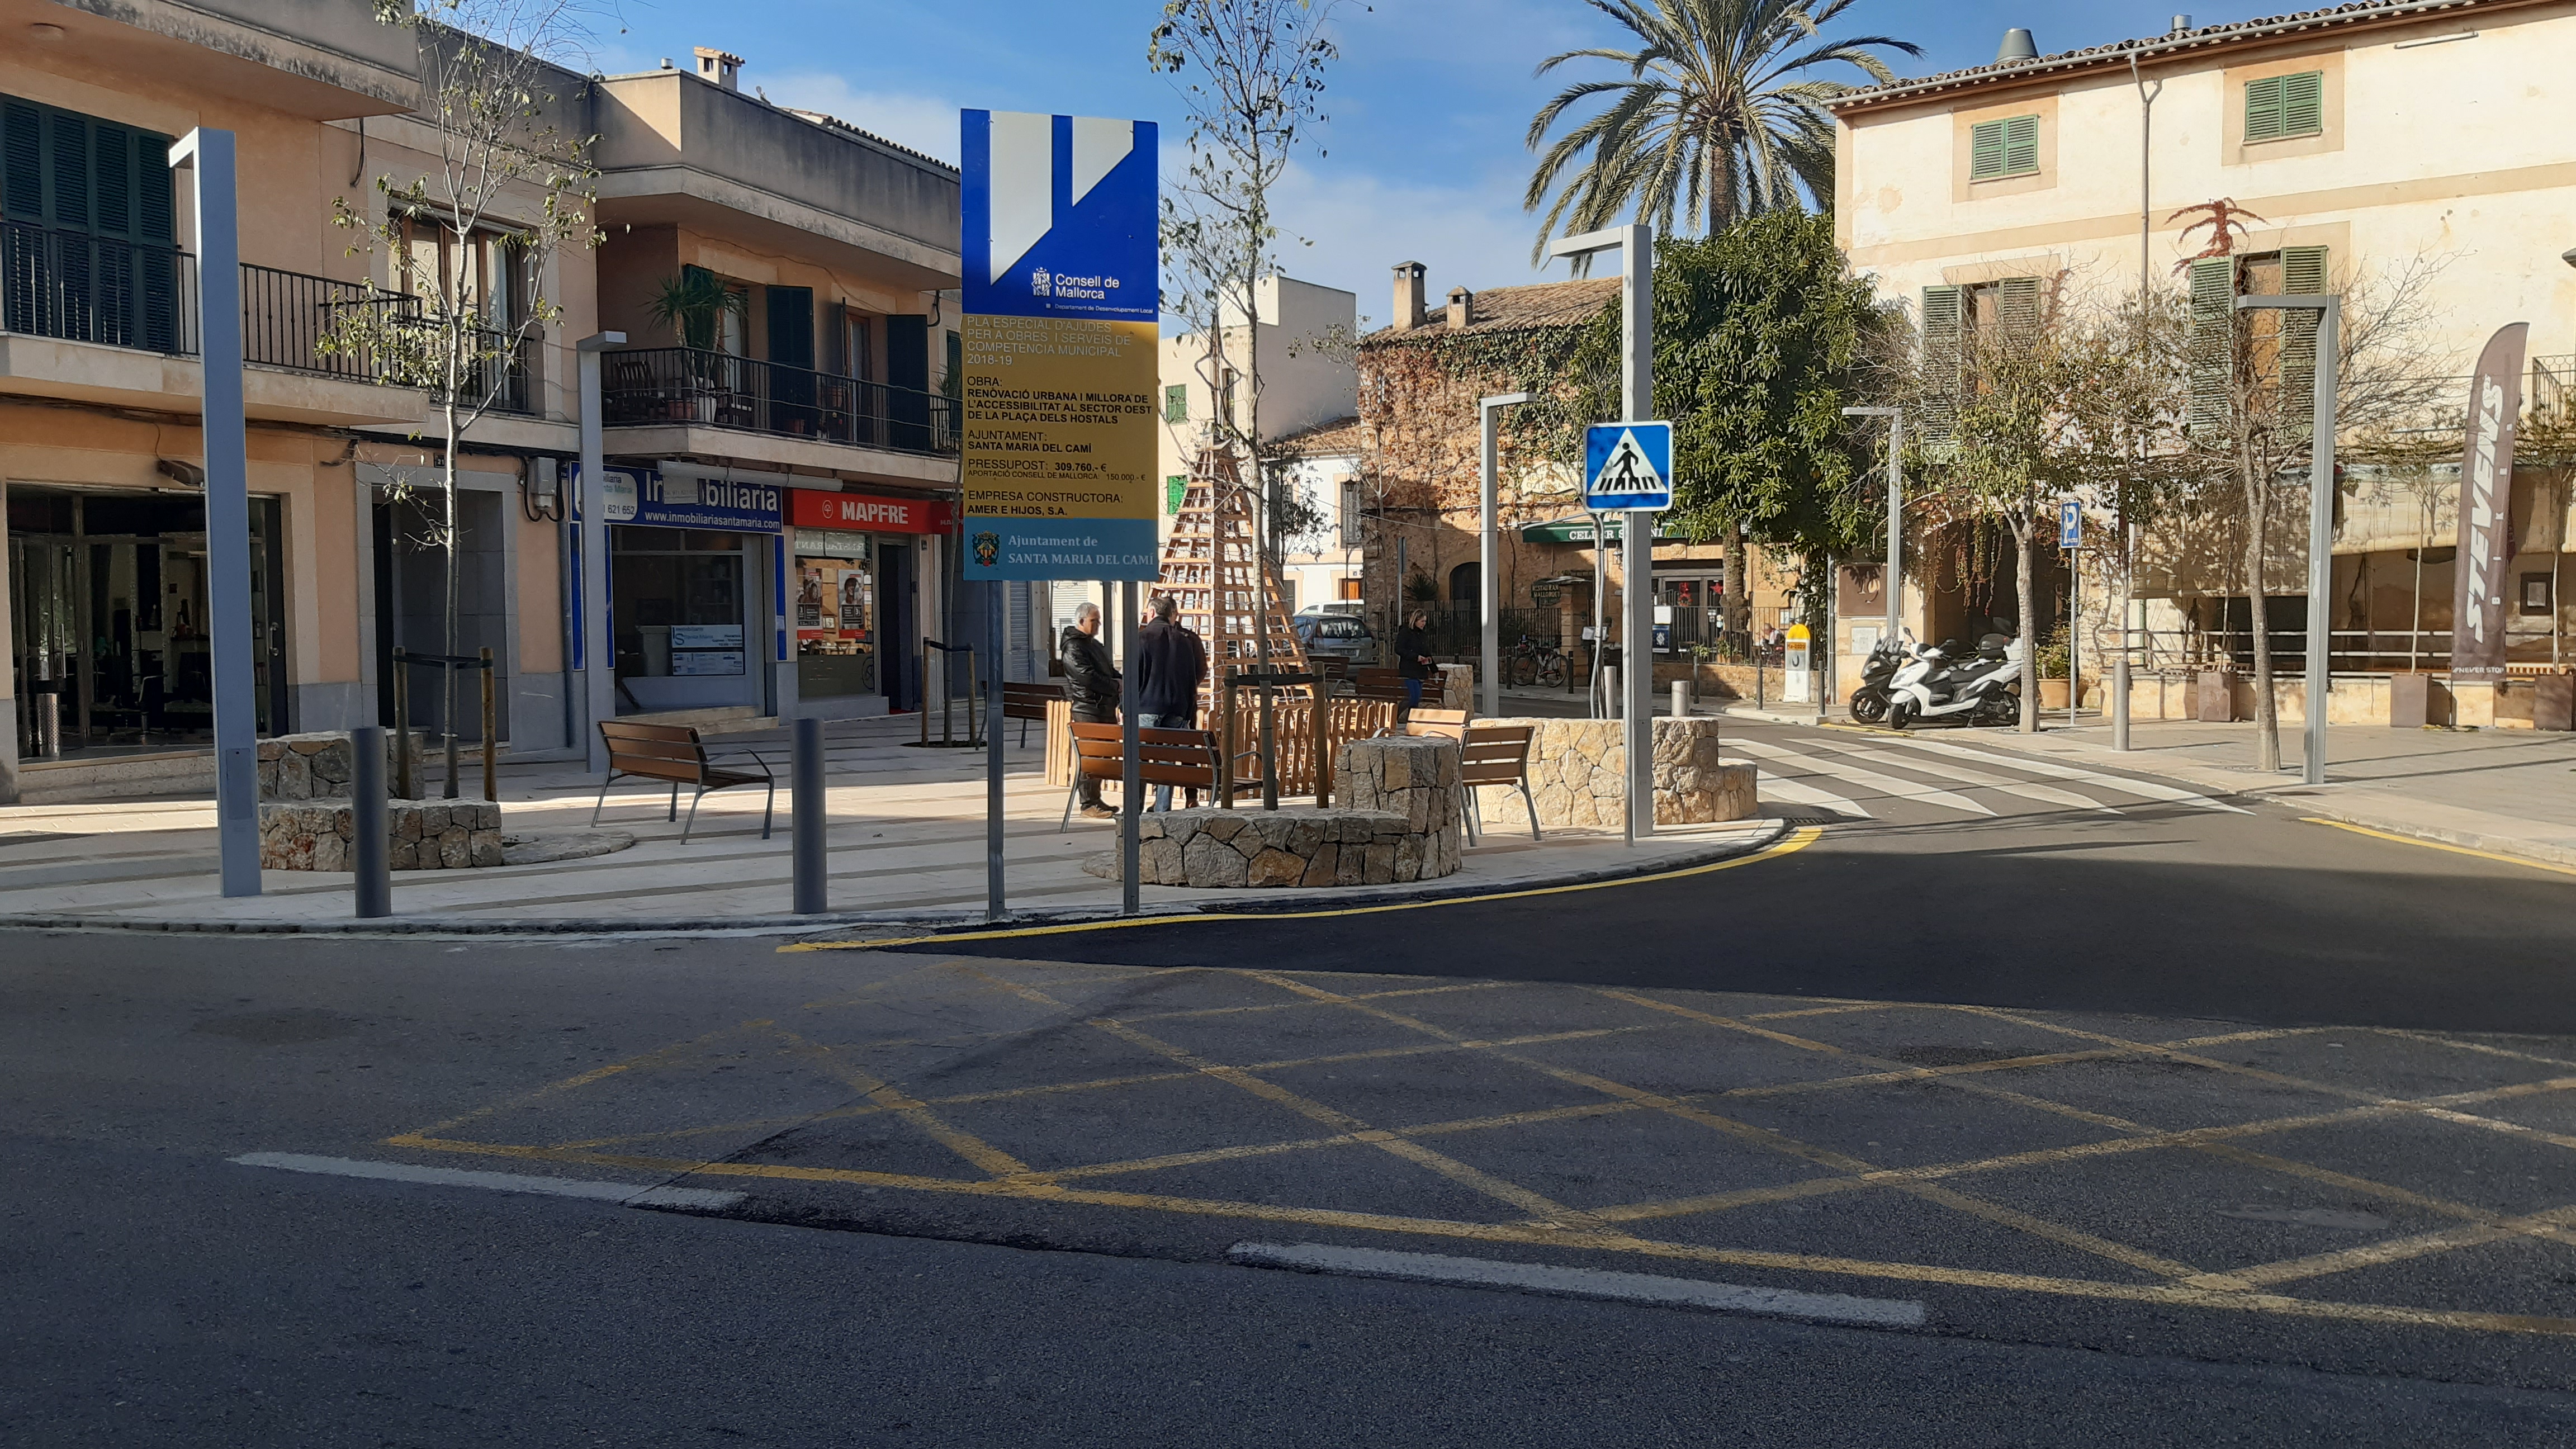 El Consell cofinança amb 150.000 euros un projecte de renovació urbana a Santa Maria del Camí.